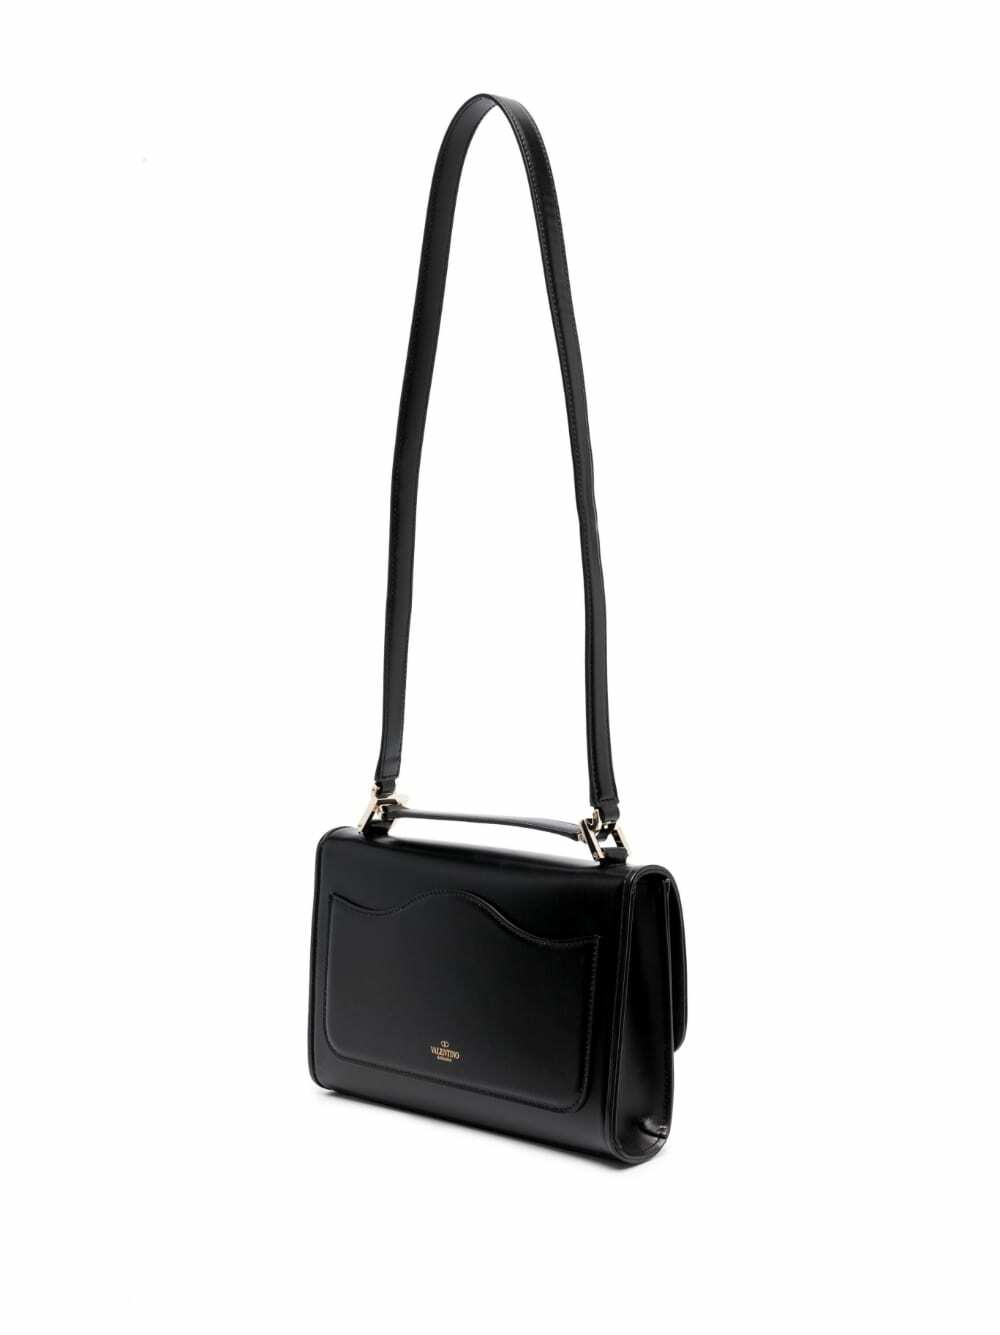 VALENTINO GARAVANI: VLogo Type bag in leather - Black